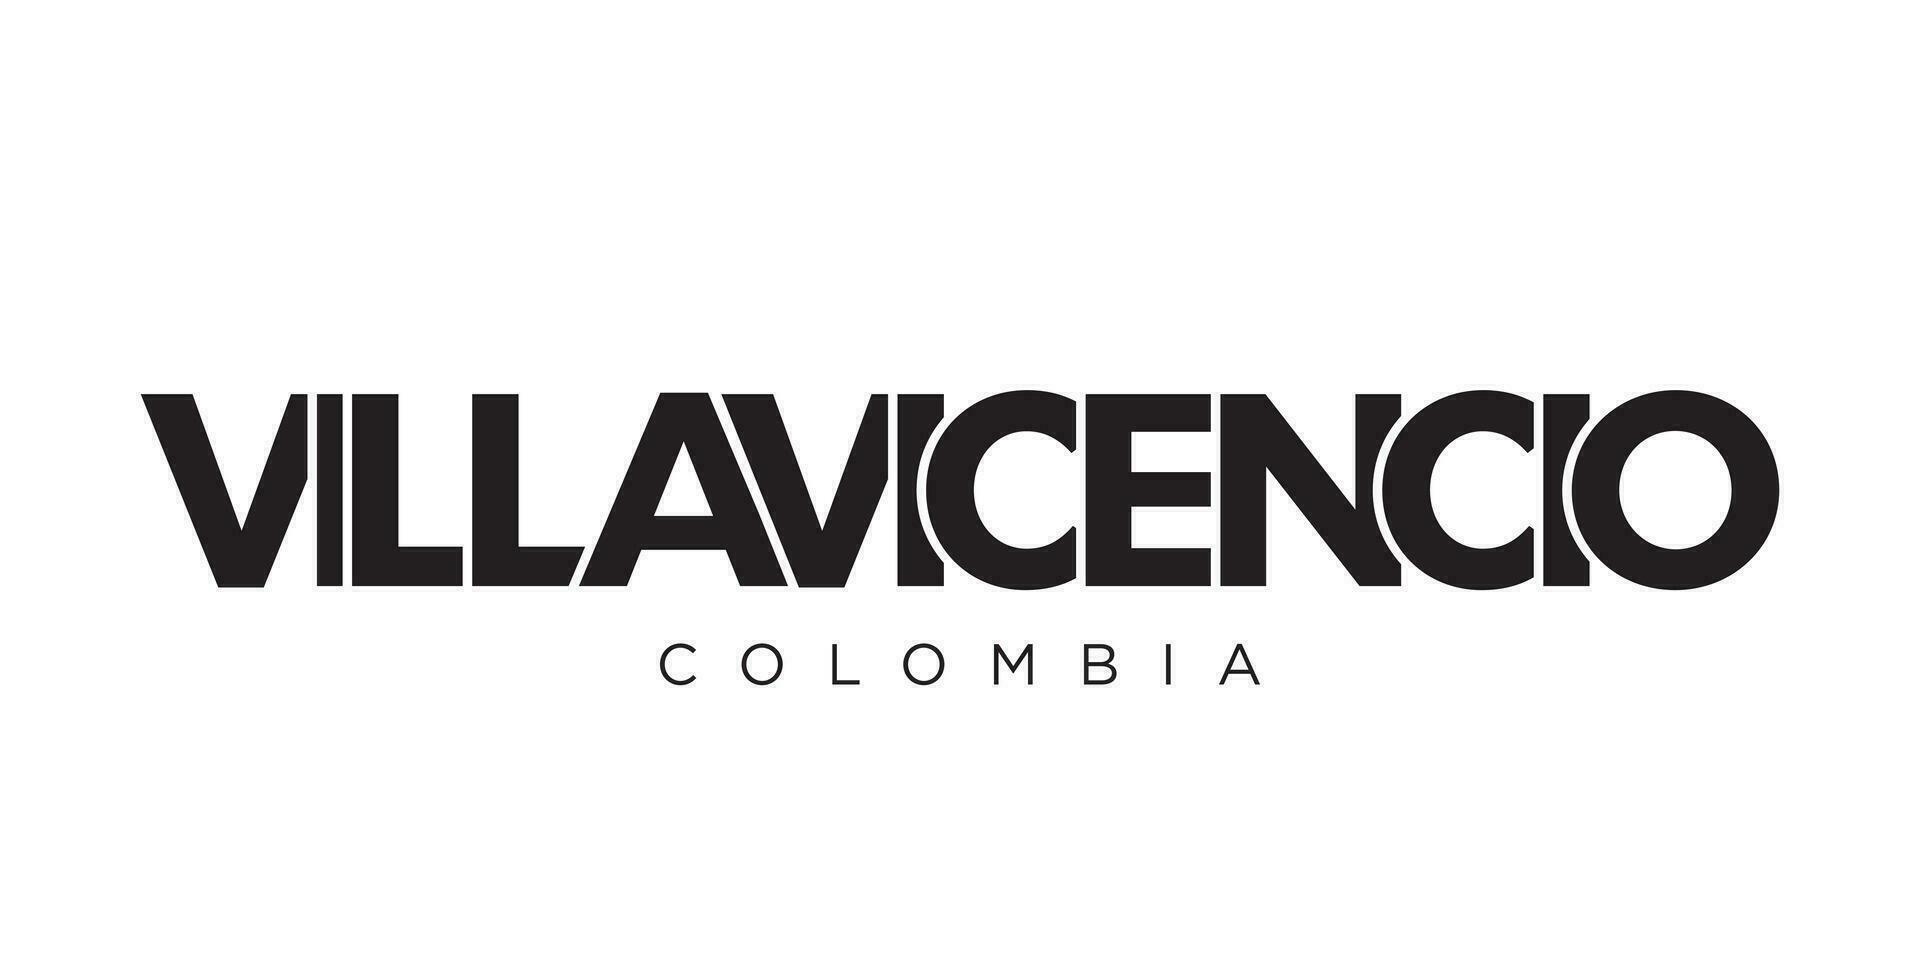 villavicencio im das Kolumbien Emblem. das Design Eigenschaften ein geometrisch Stil, Vektor Illustration mit Fett gedruckt Typografie im ein modern Schriftart. das Grafik Slogan Beschriftung.